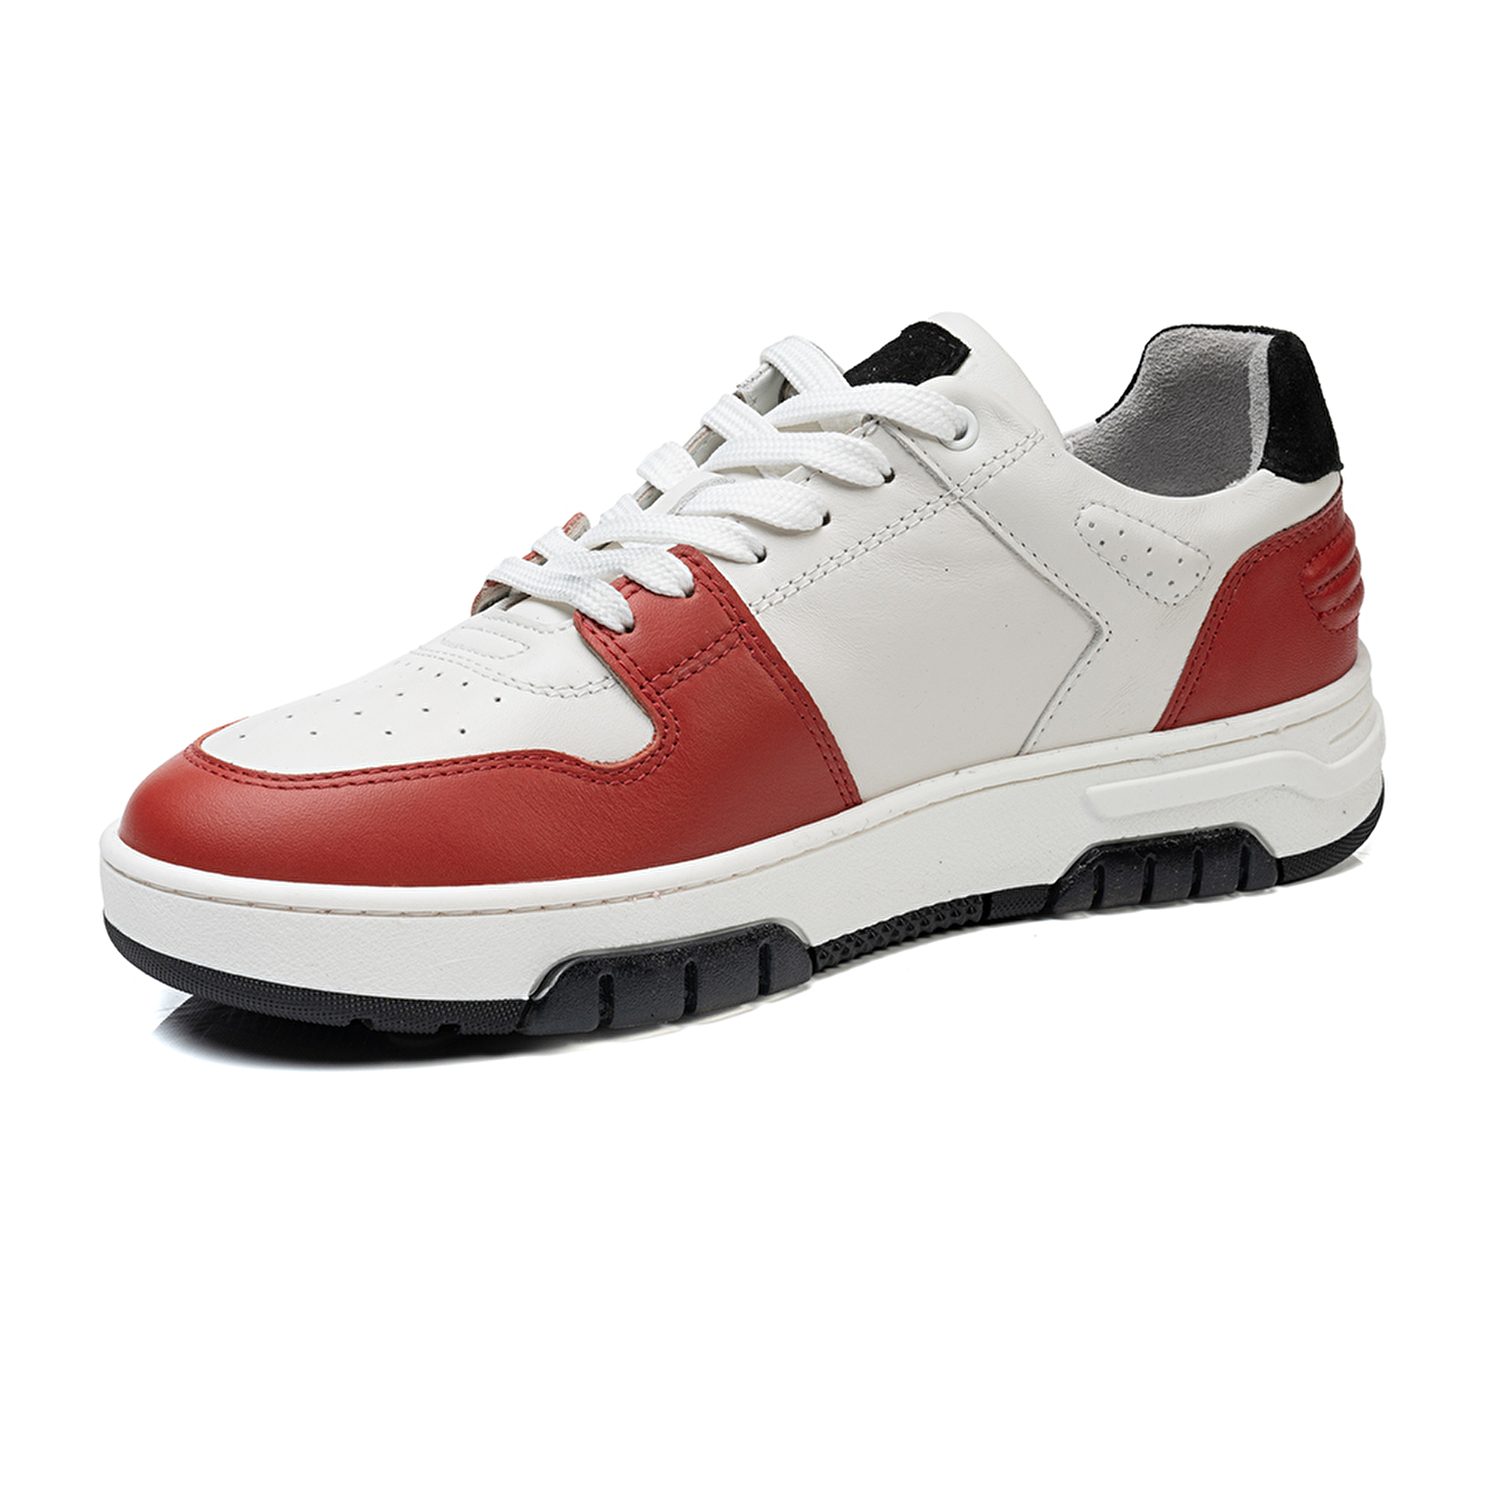 Kadın Beyaz Kırmızı Hakiki Deri Sneaker Ayakkabı 3K2SA33021-2